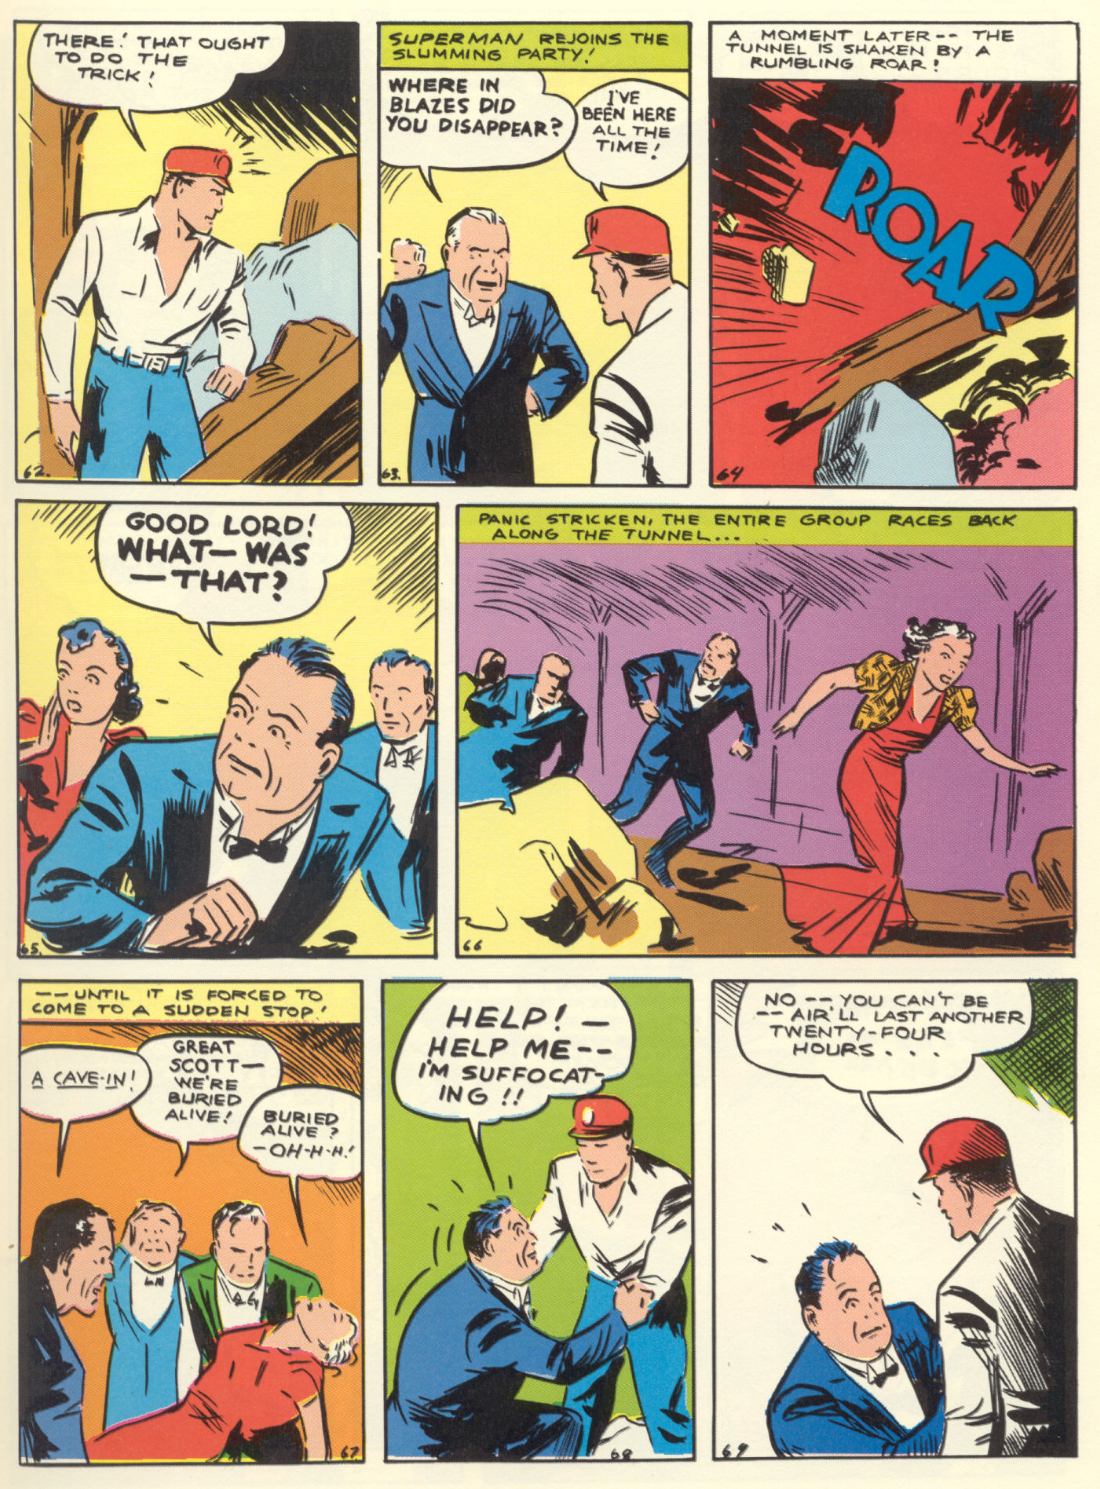 Комиксы про первый. Супермен первый комикс 1939. Первый комикс про Супермена. Самый первый комикс вс. Картинки первых комиксов.